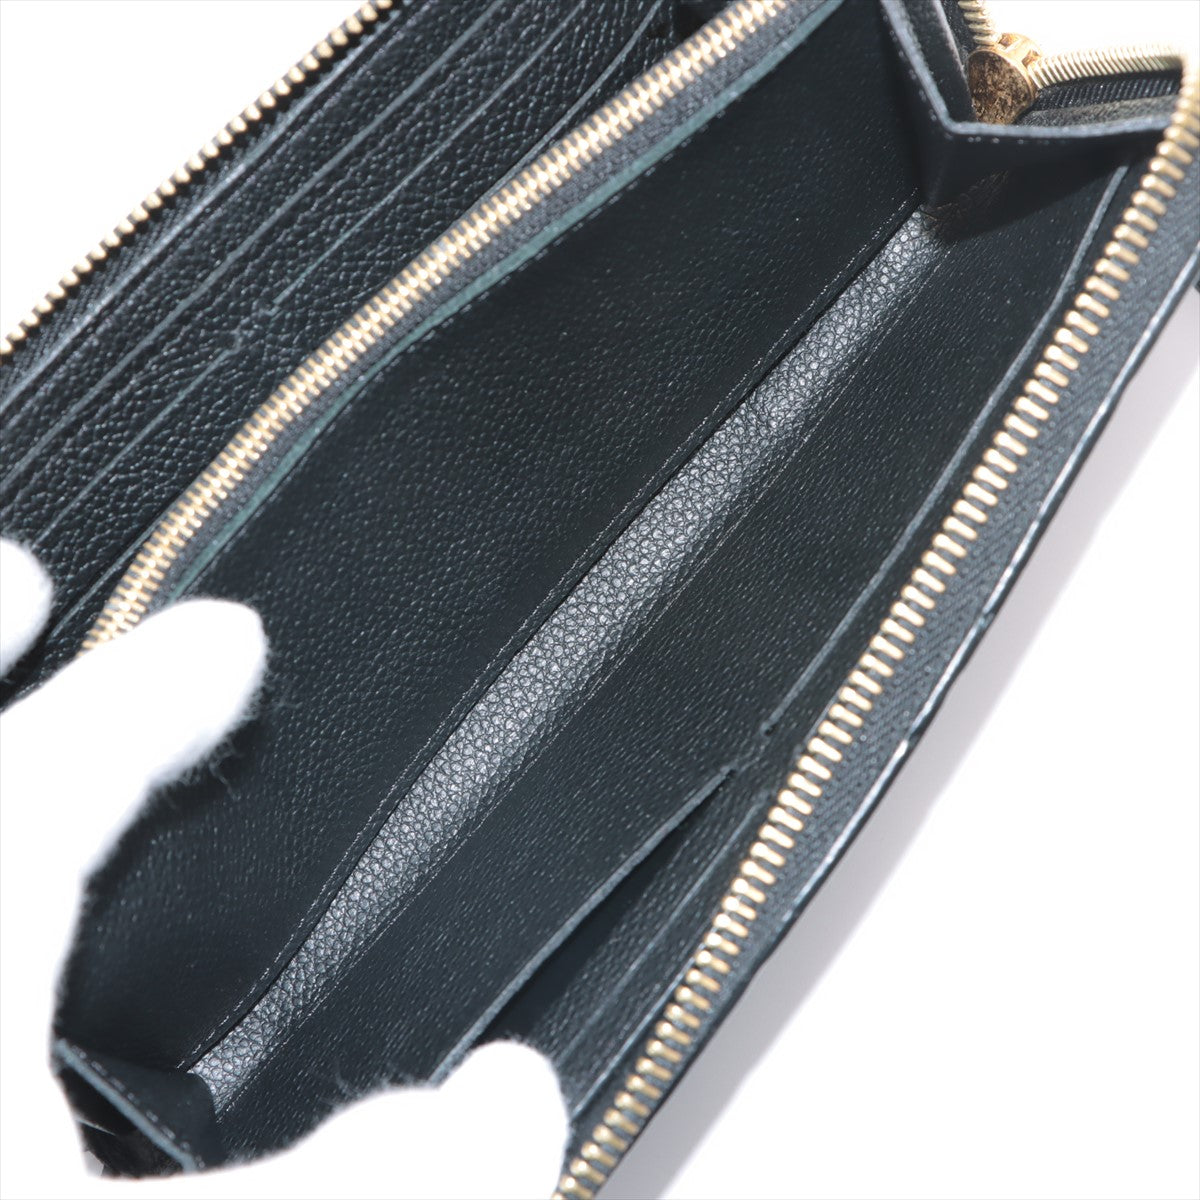 Louis Vuitton Monogram Empreinte Wallet Clemence M60171 Noir Zip Round Wallet